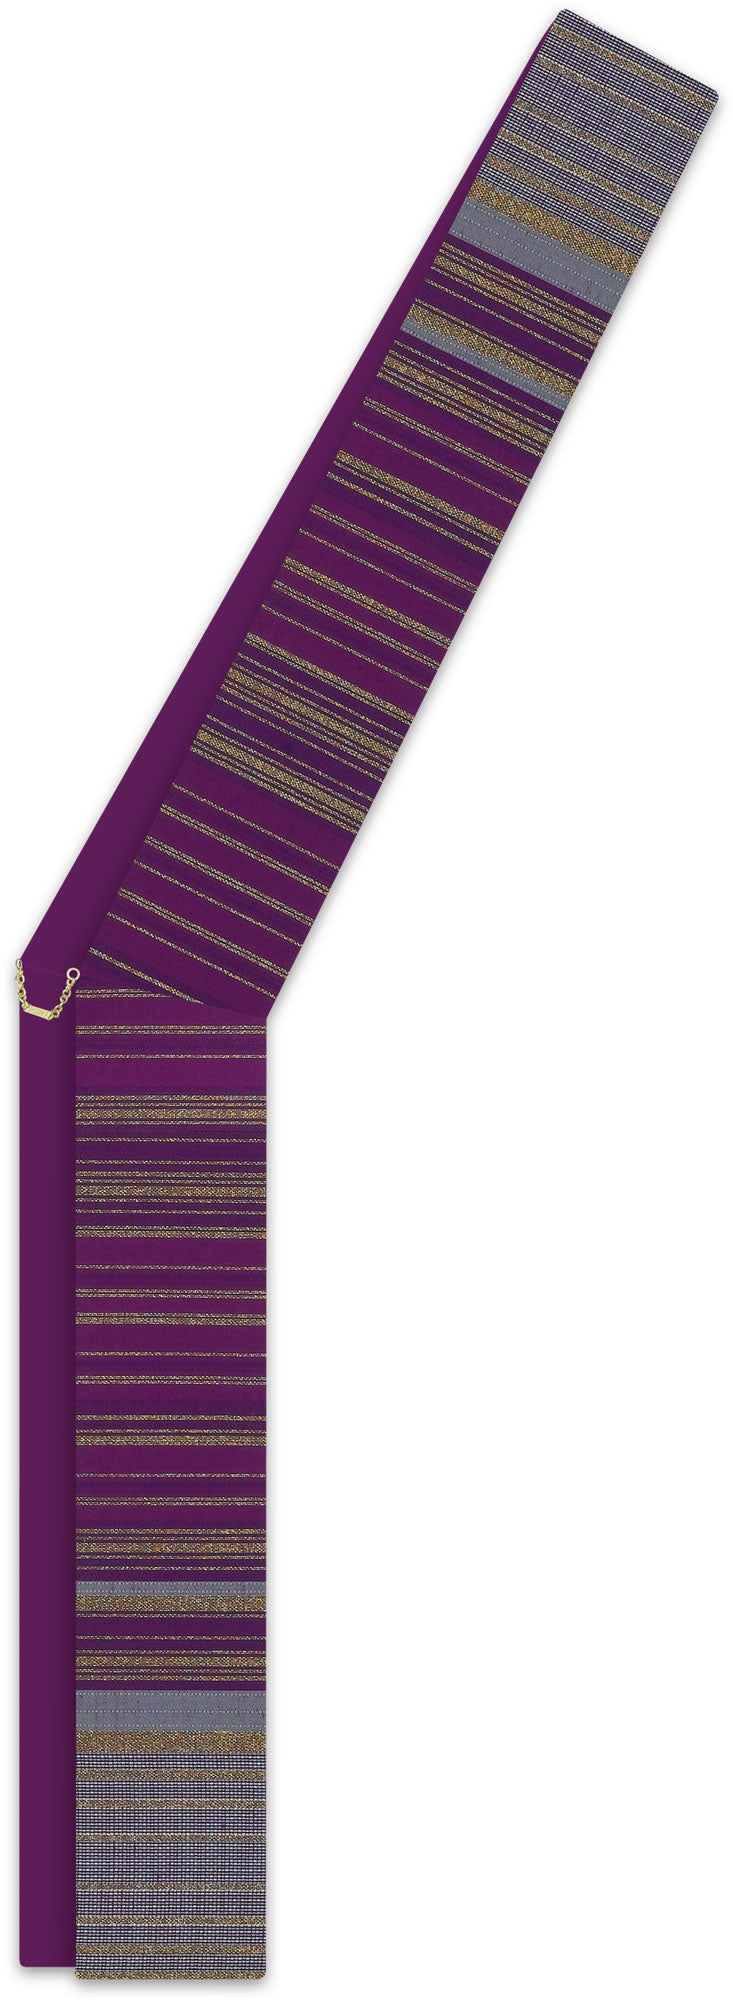 deacon-stole-34-19-purple.jpg